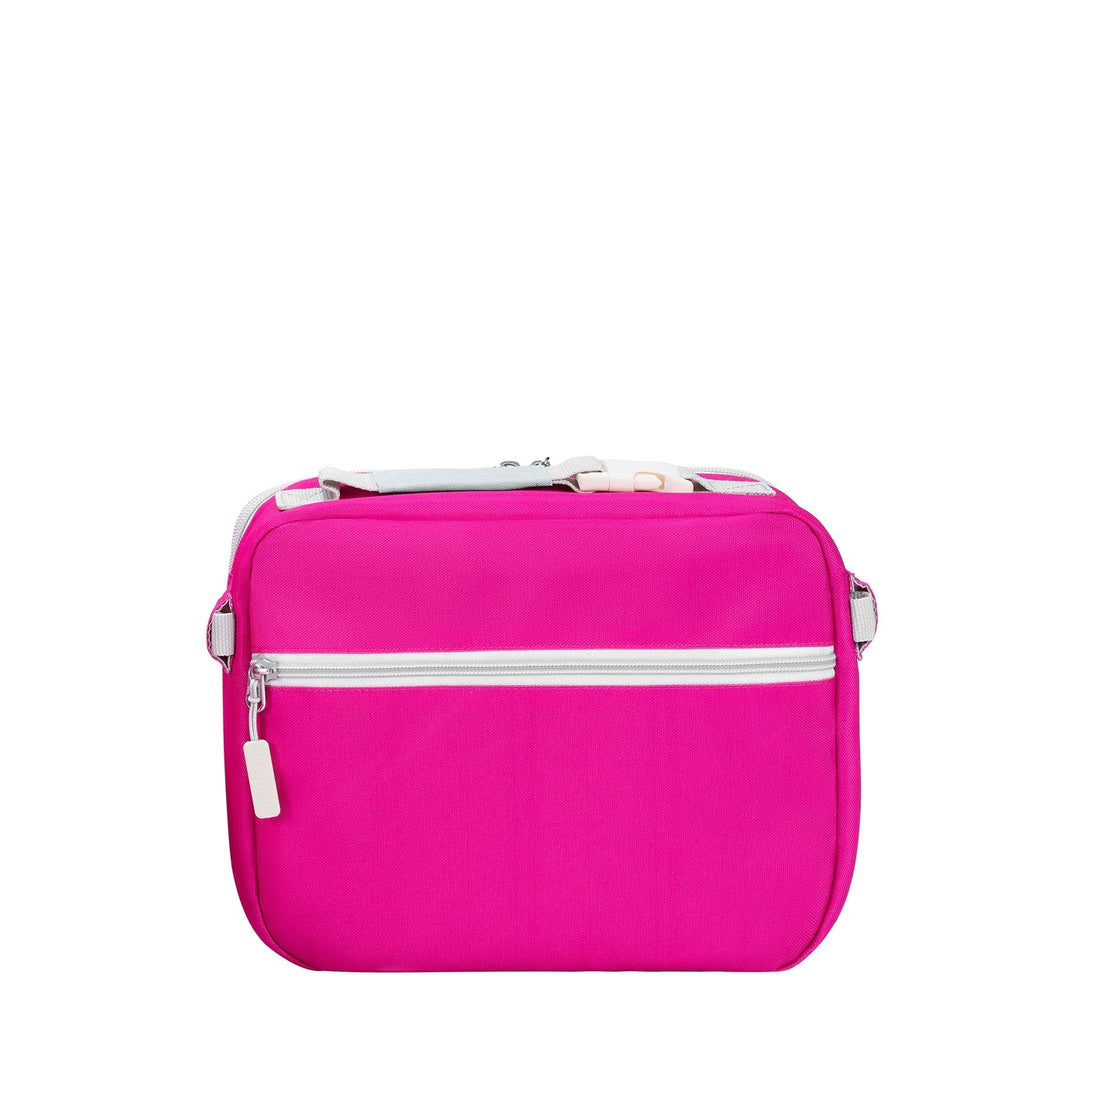 Ellis Lunch Bag - Pink Color Block